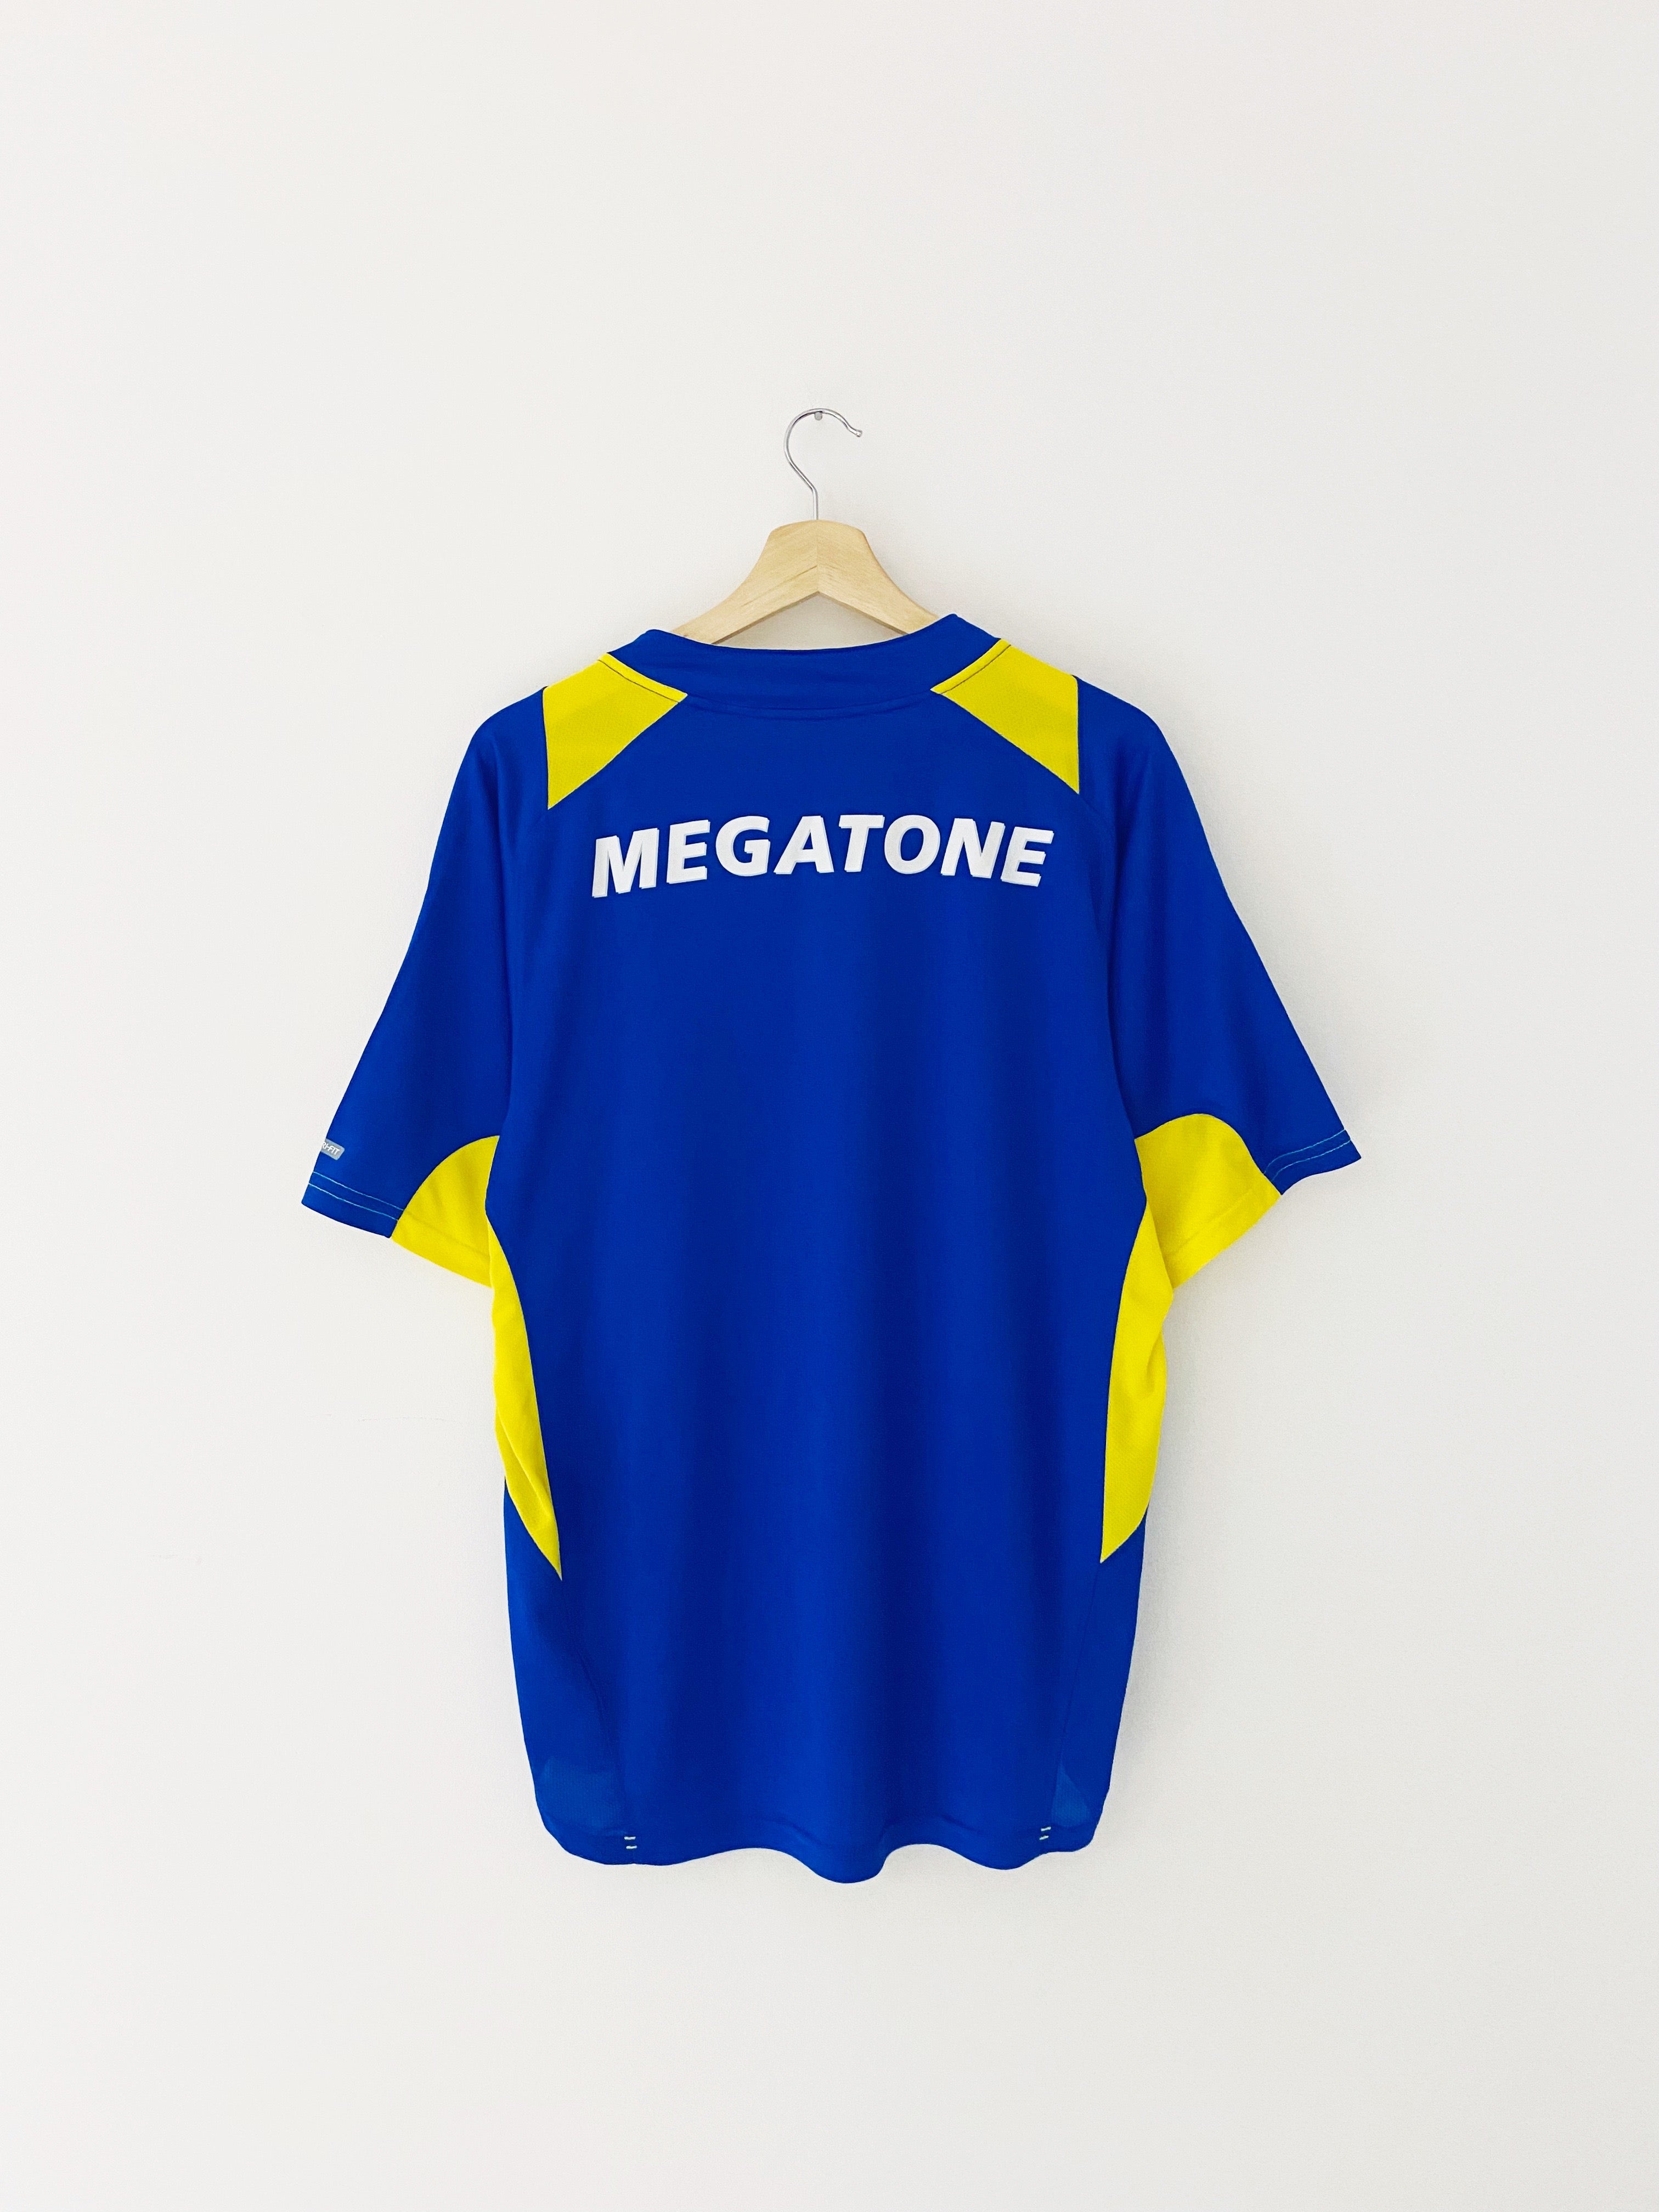 2005/06 Boca Juniors Home Shirt (L) 9/10